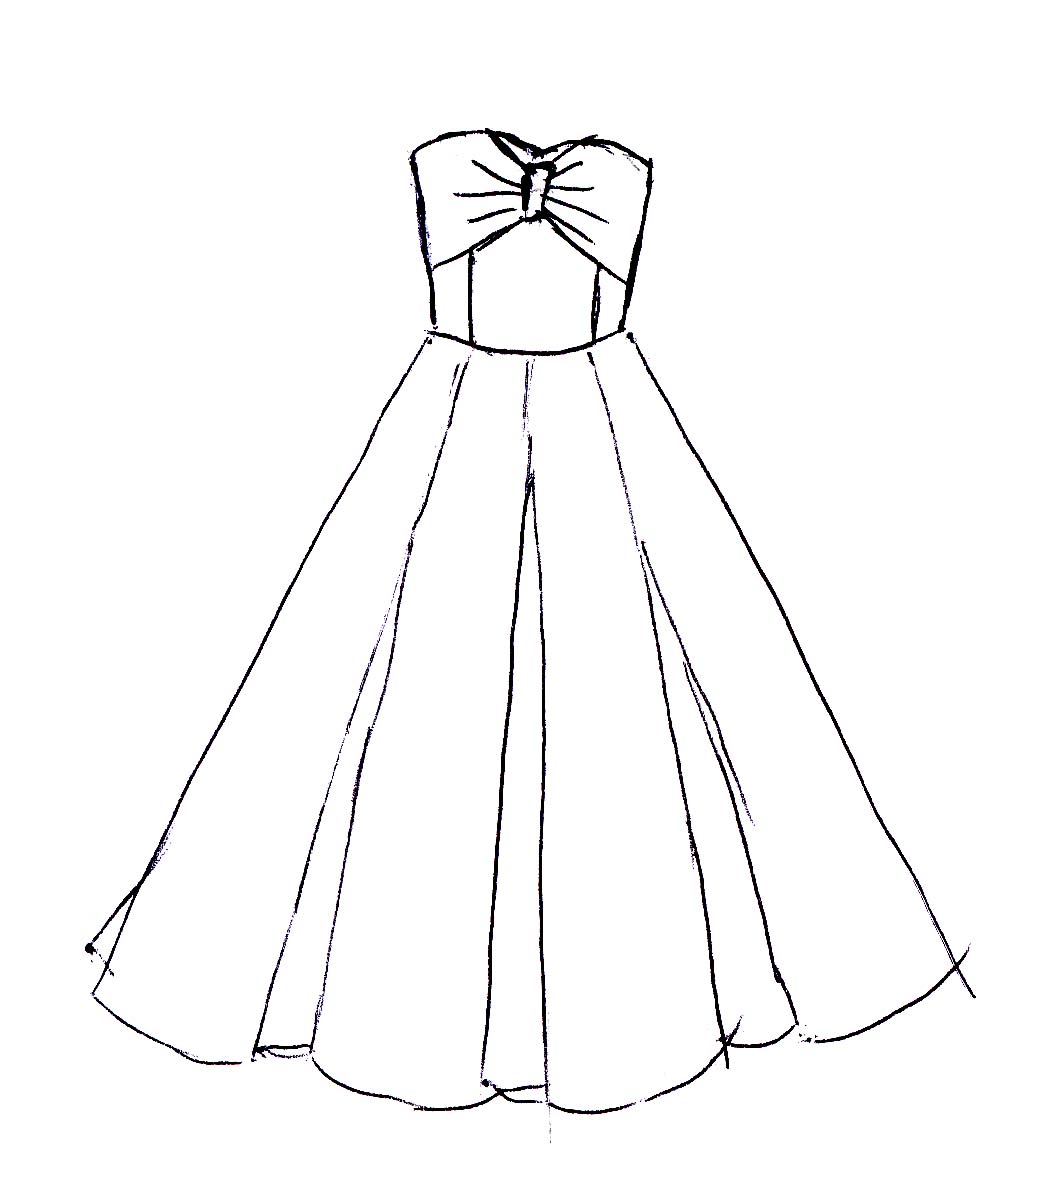 draw dress design sketches online